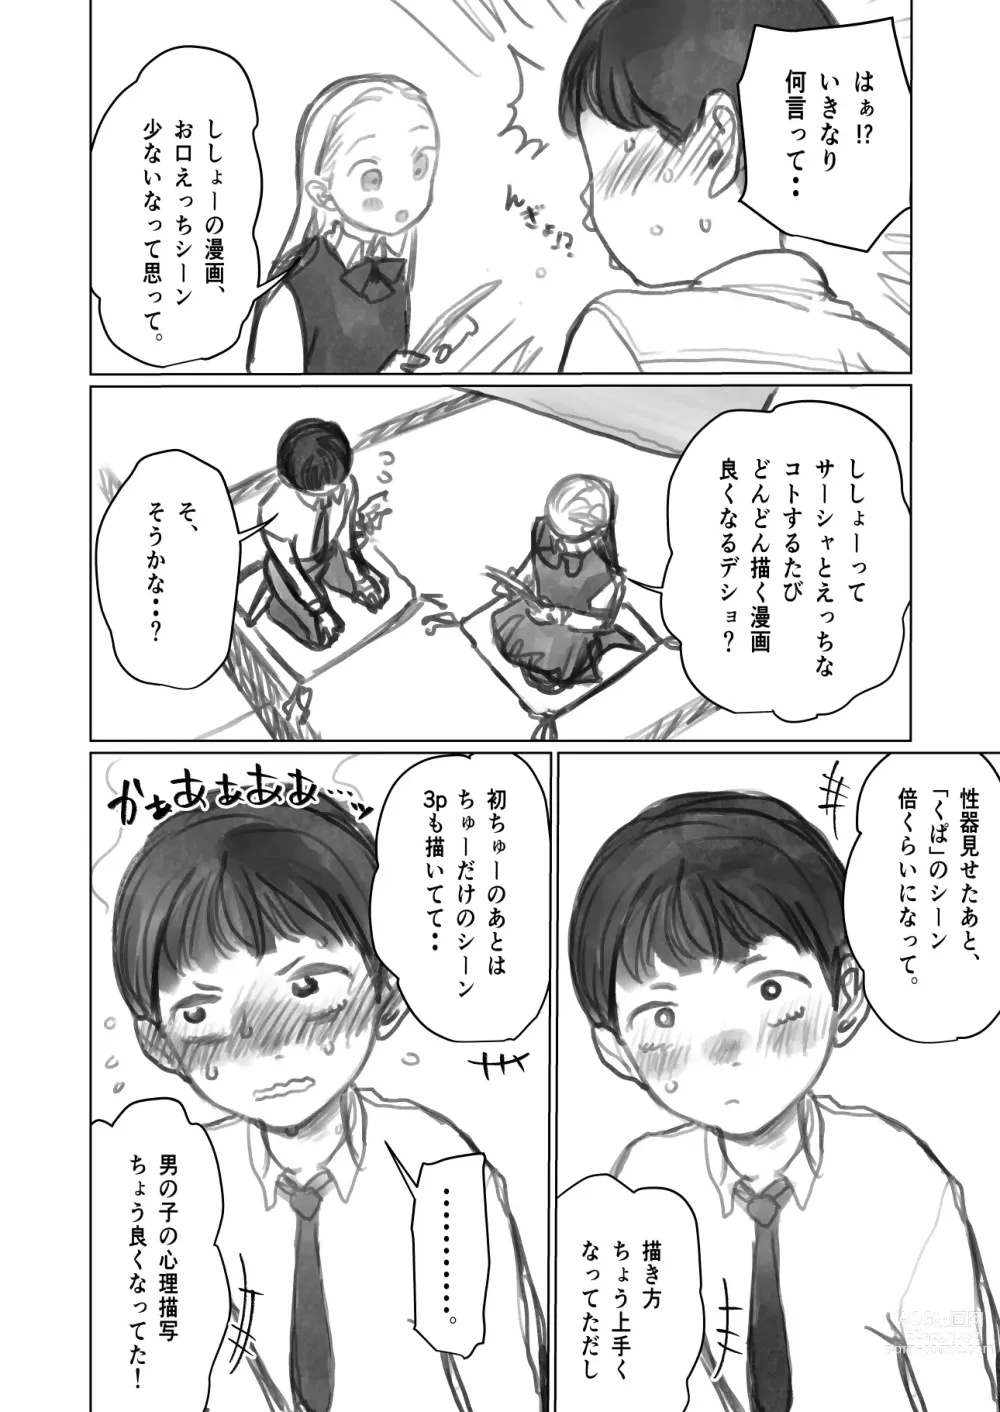 Page 2 of doujinshi Fellasha-chan